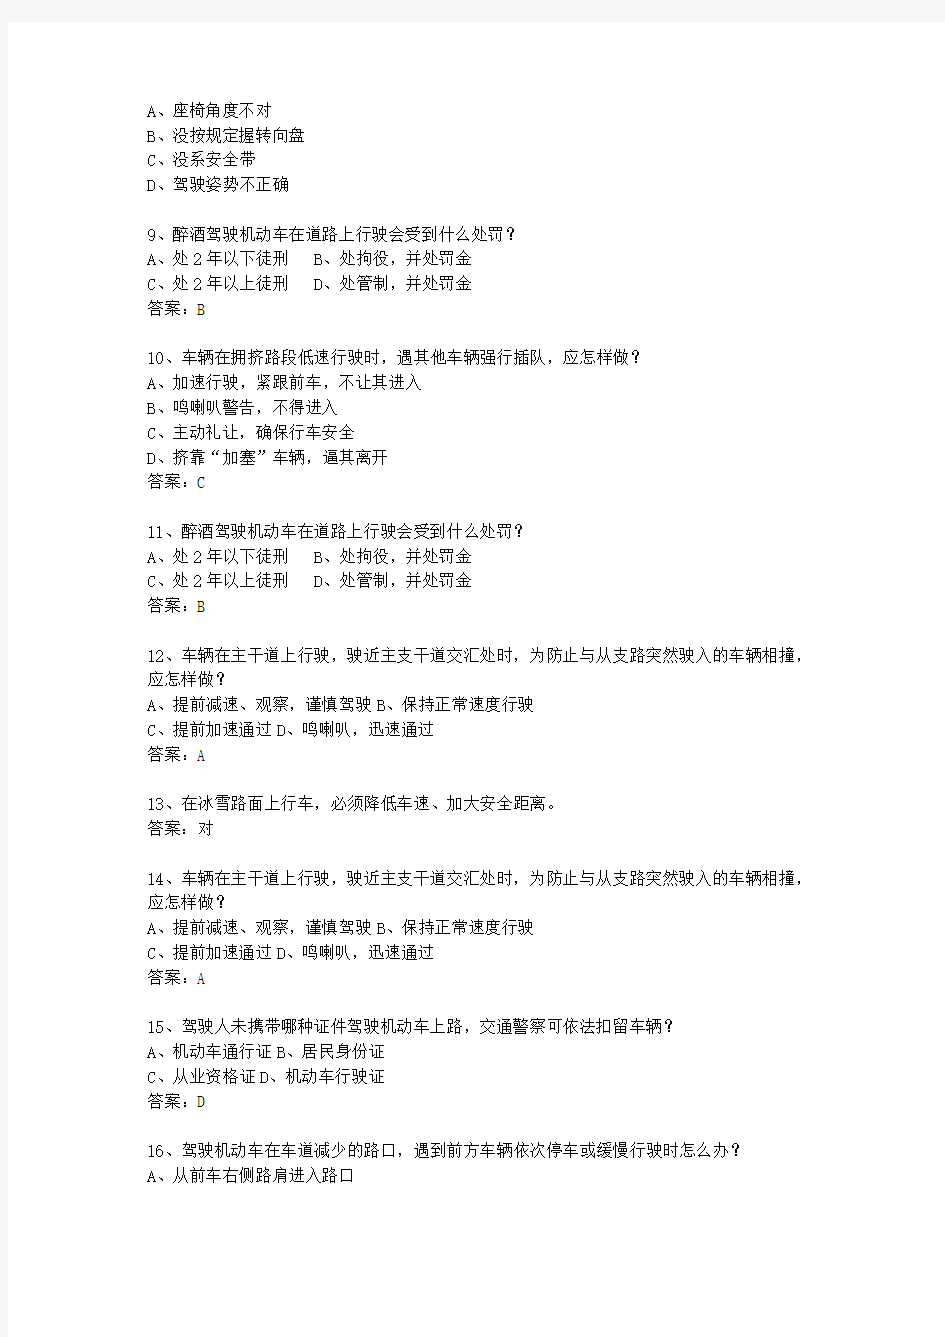 2013四川省驾校考试科目一手动挡考试重点和考试技巧